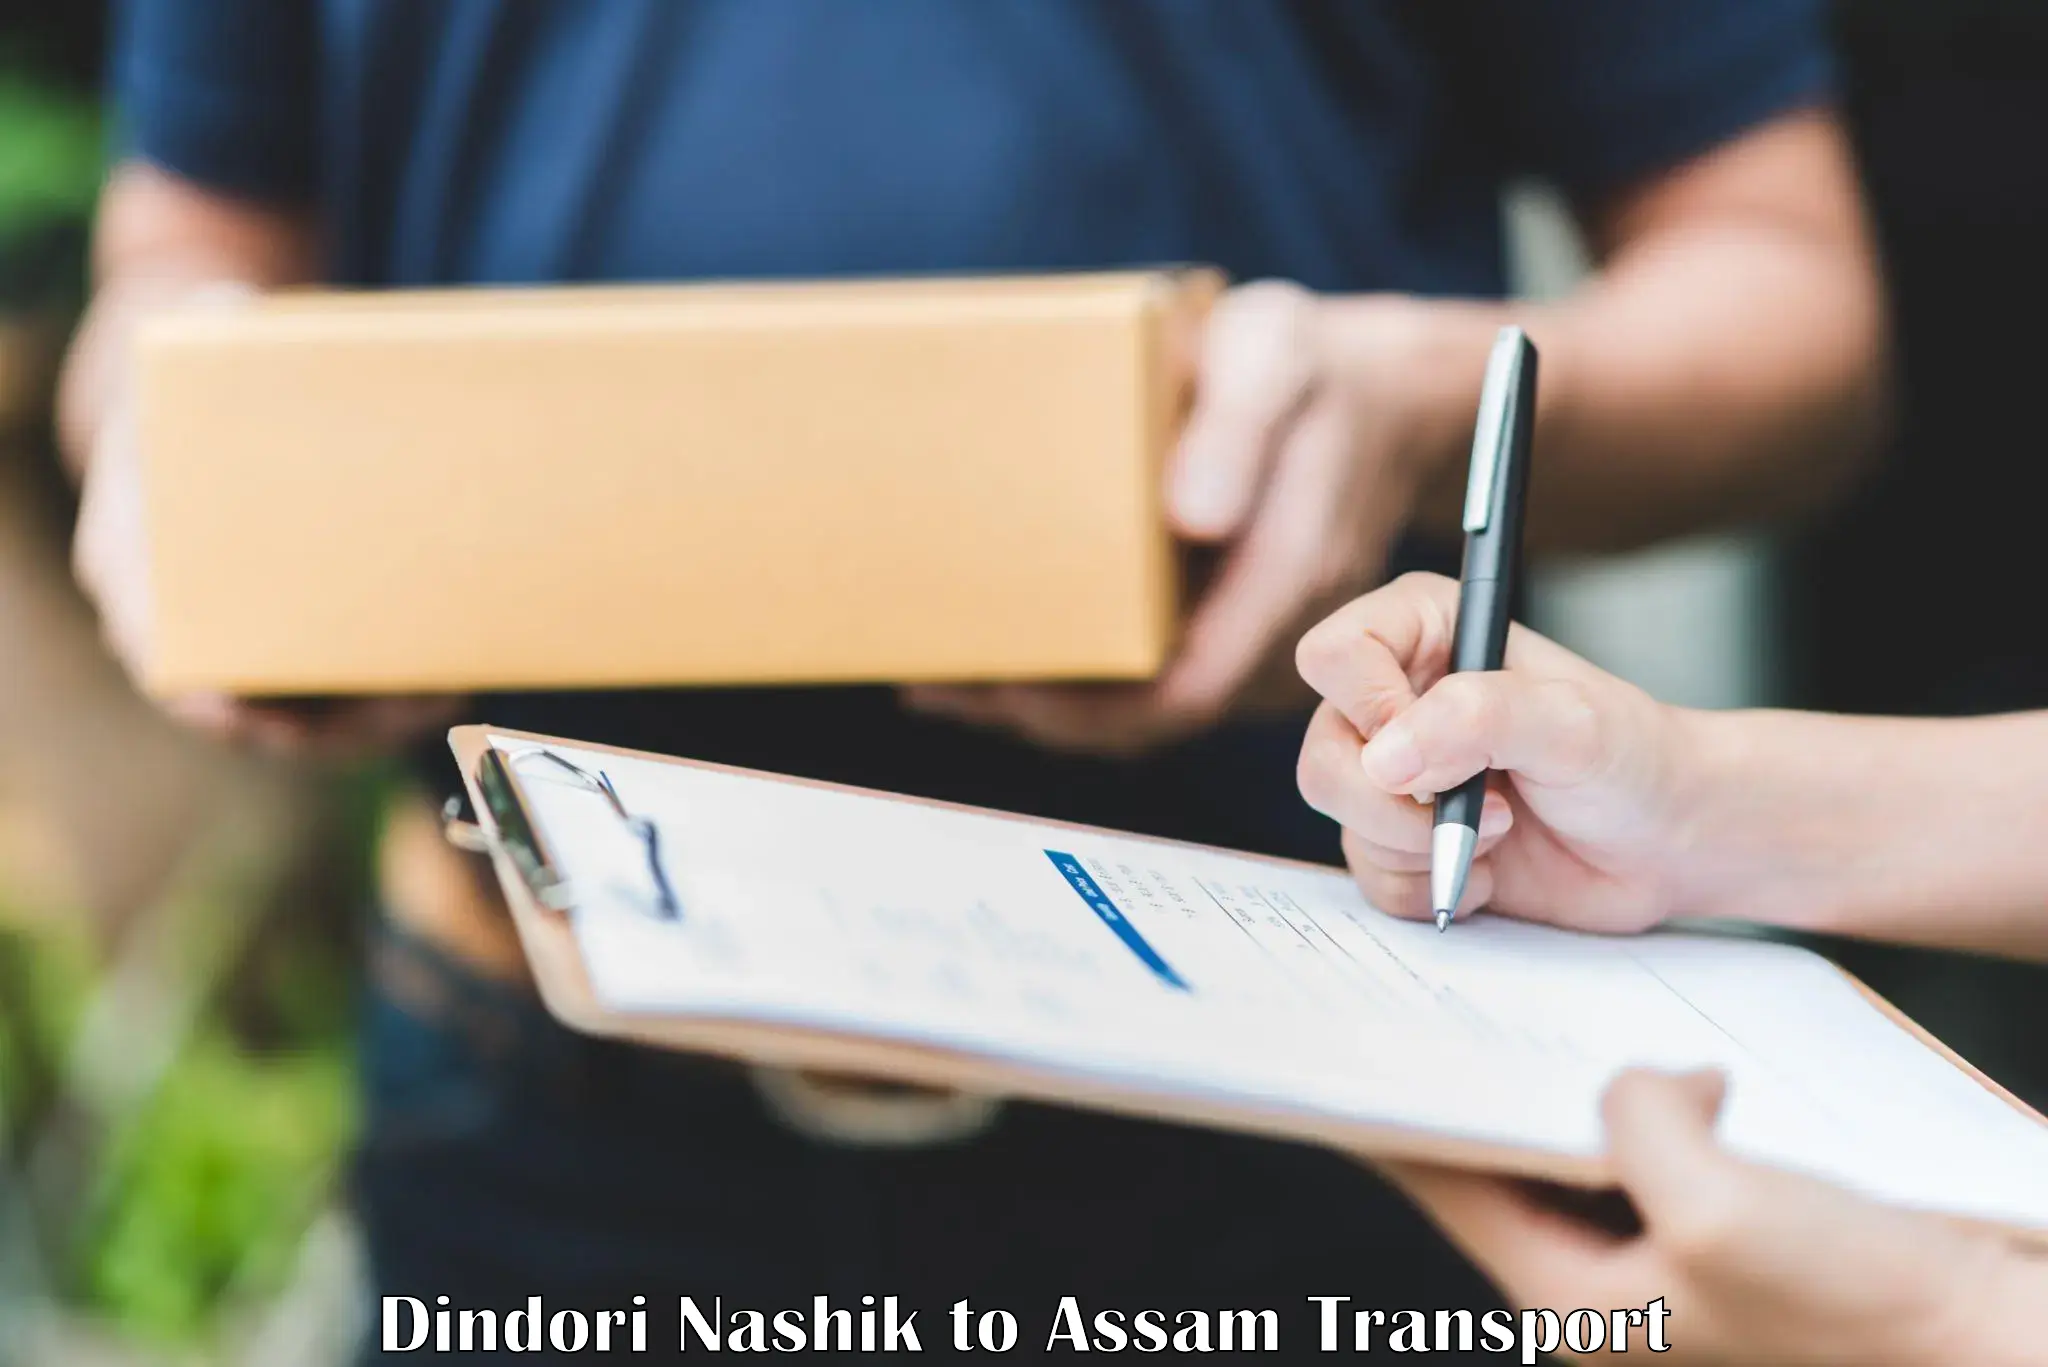 All India transport service Dindori Nashik to Jagiroad